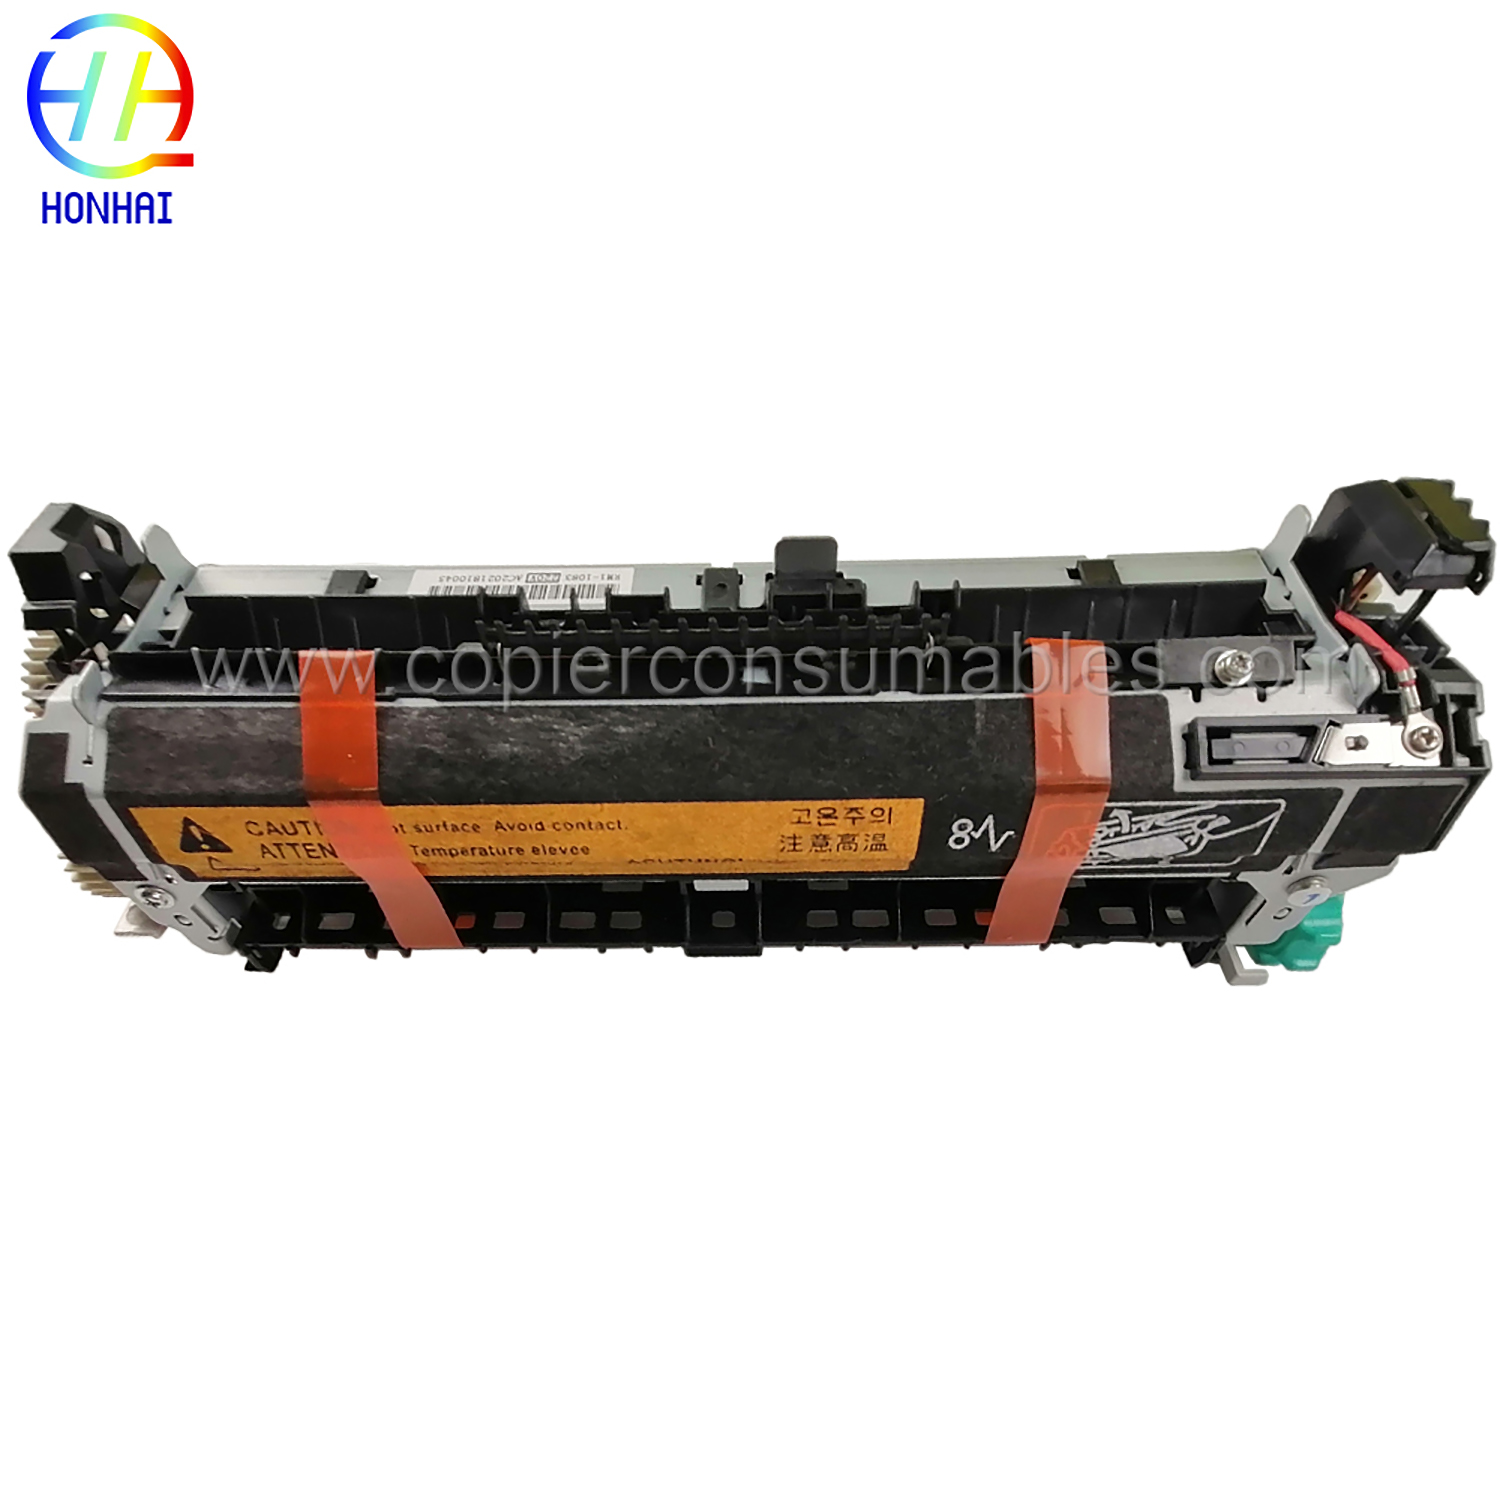 Fuser assembly for HP RM1-1083-000 RM1-1082-000 LaserJet 4250 4350 Fuser unit OEM